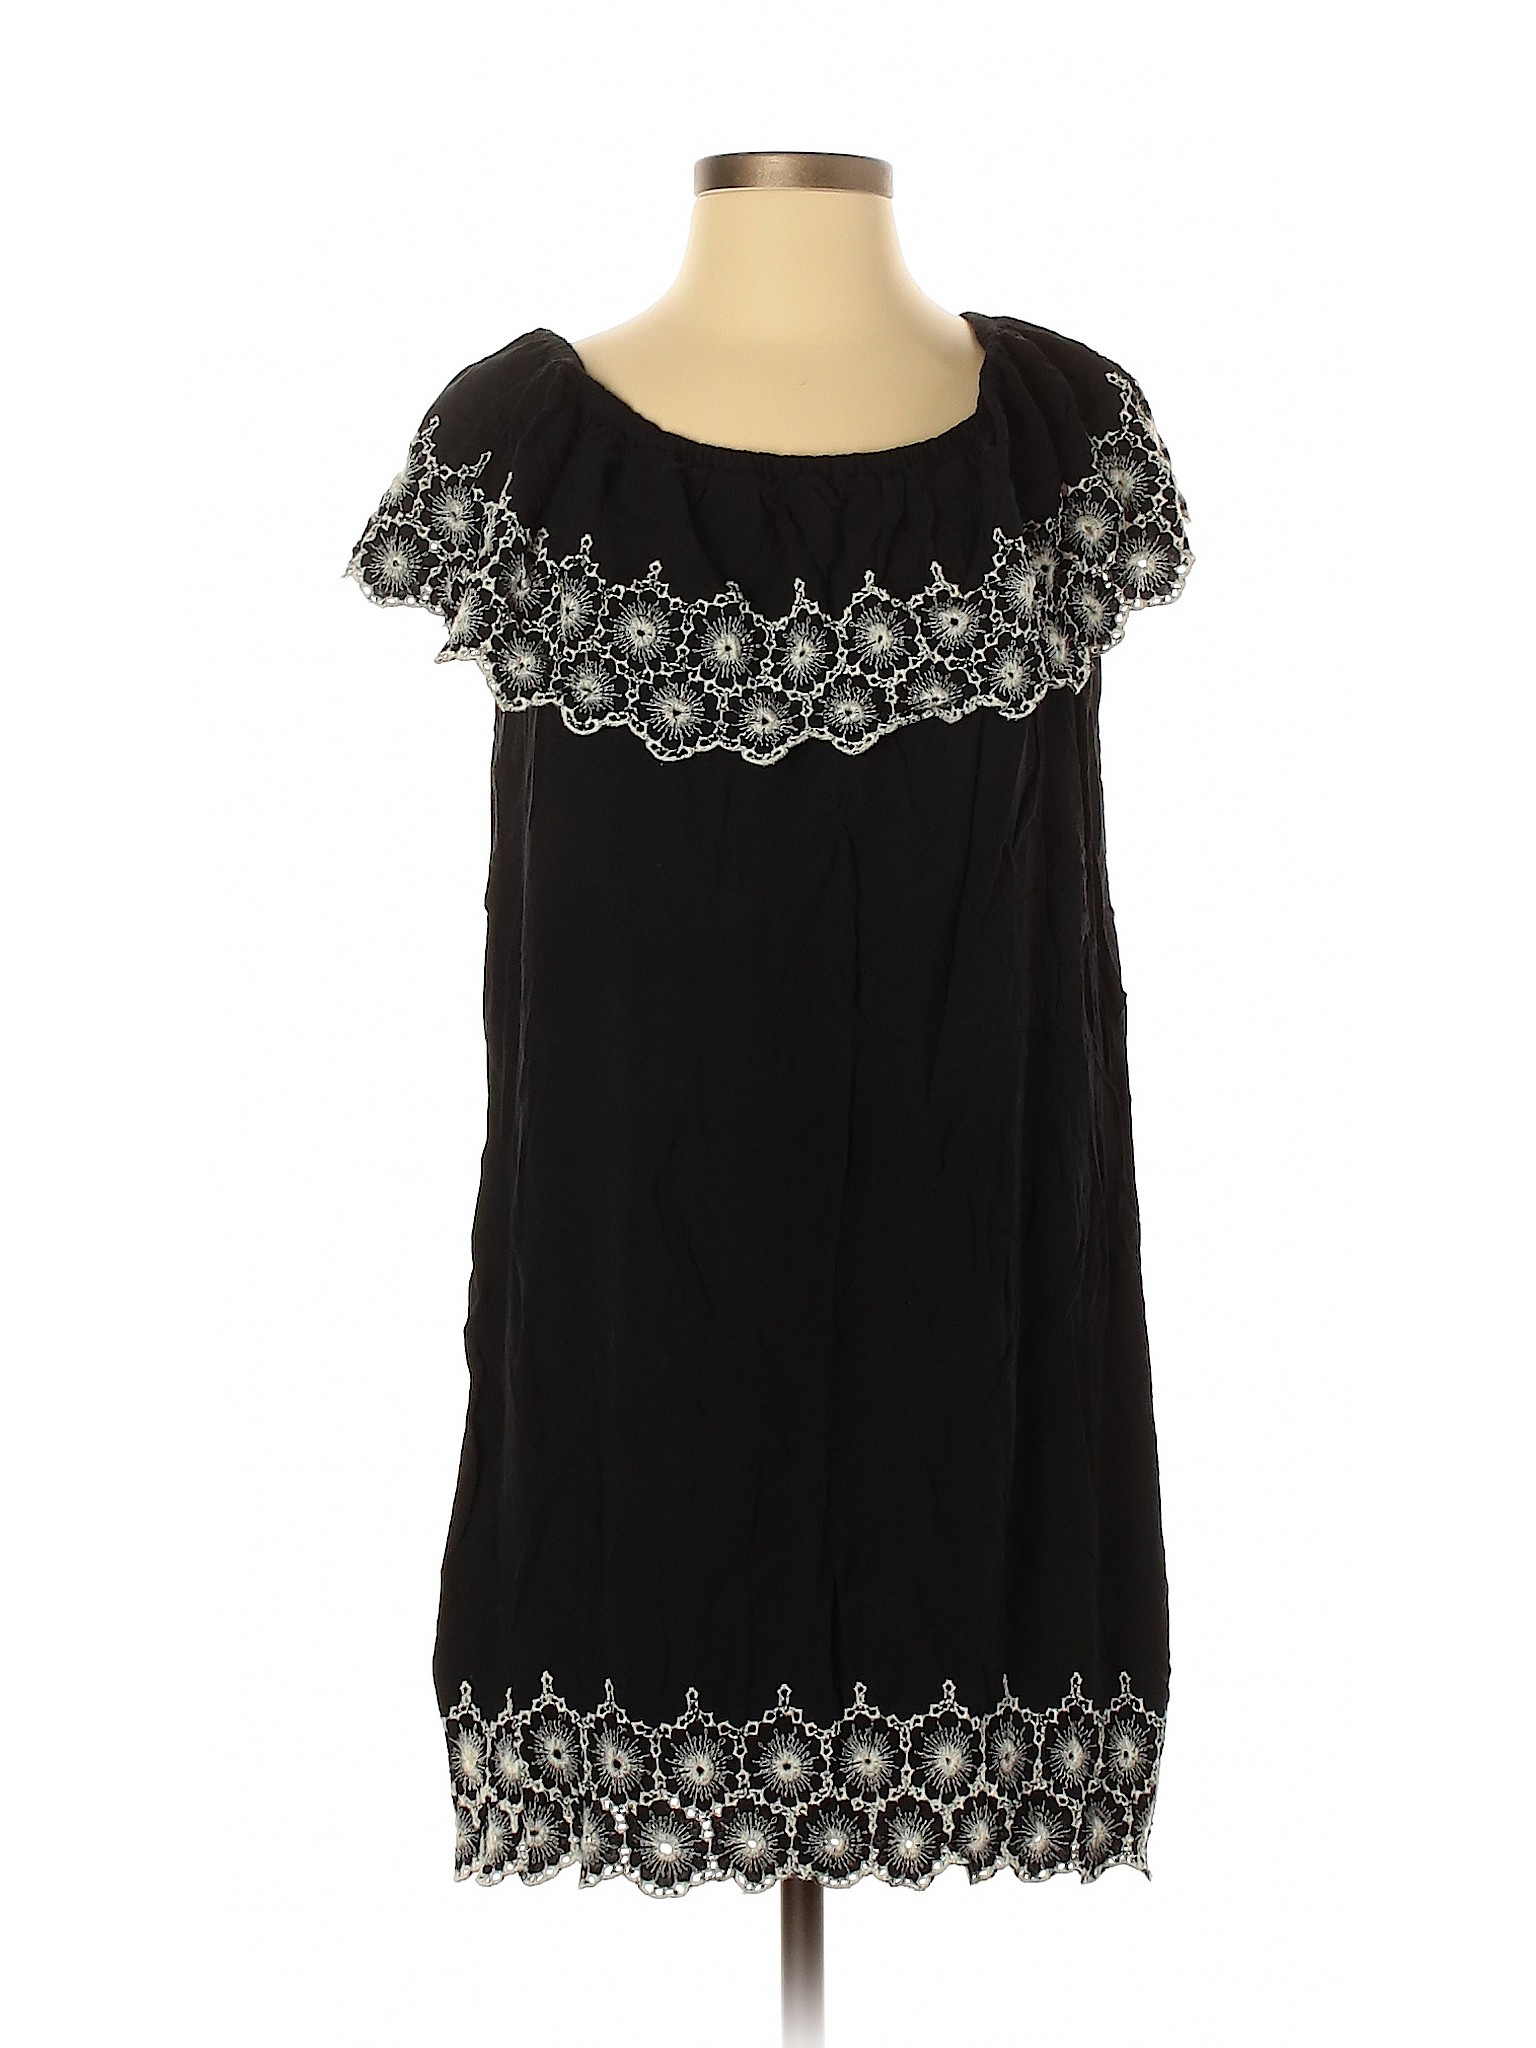 Fever Women Black Casual Dress S | eBay